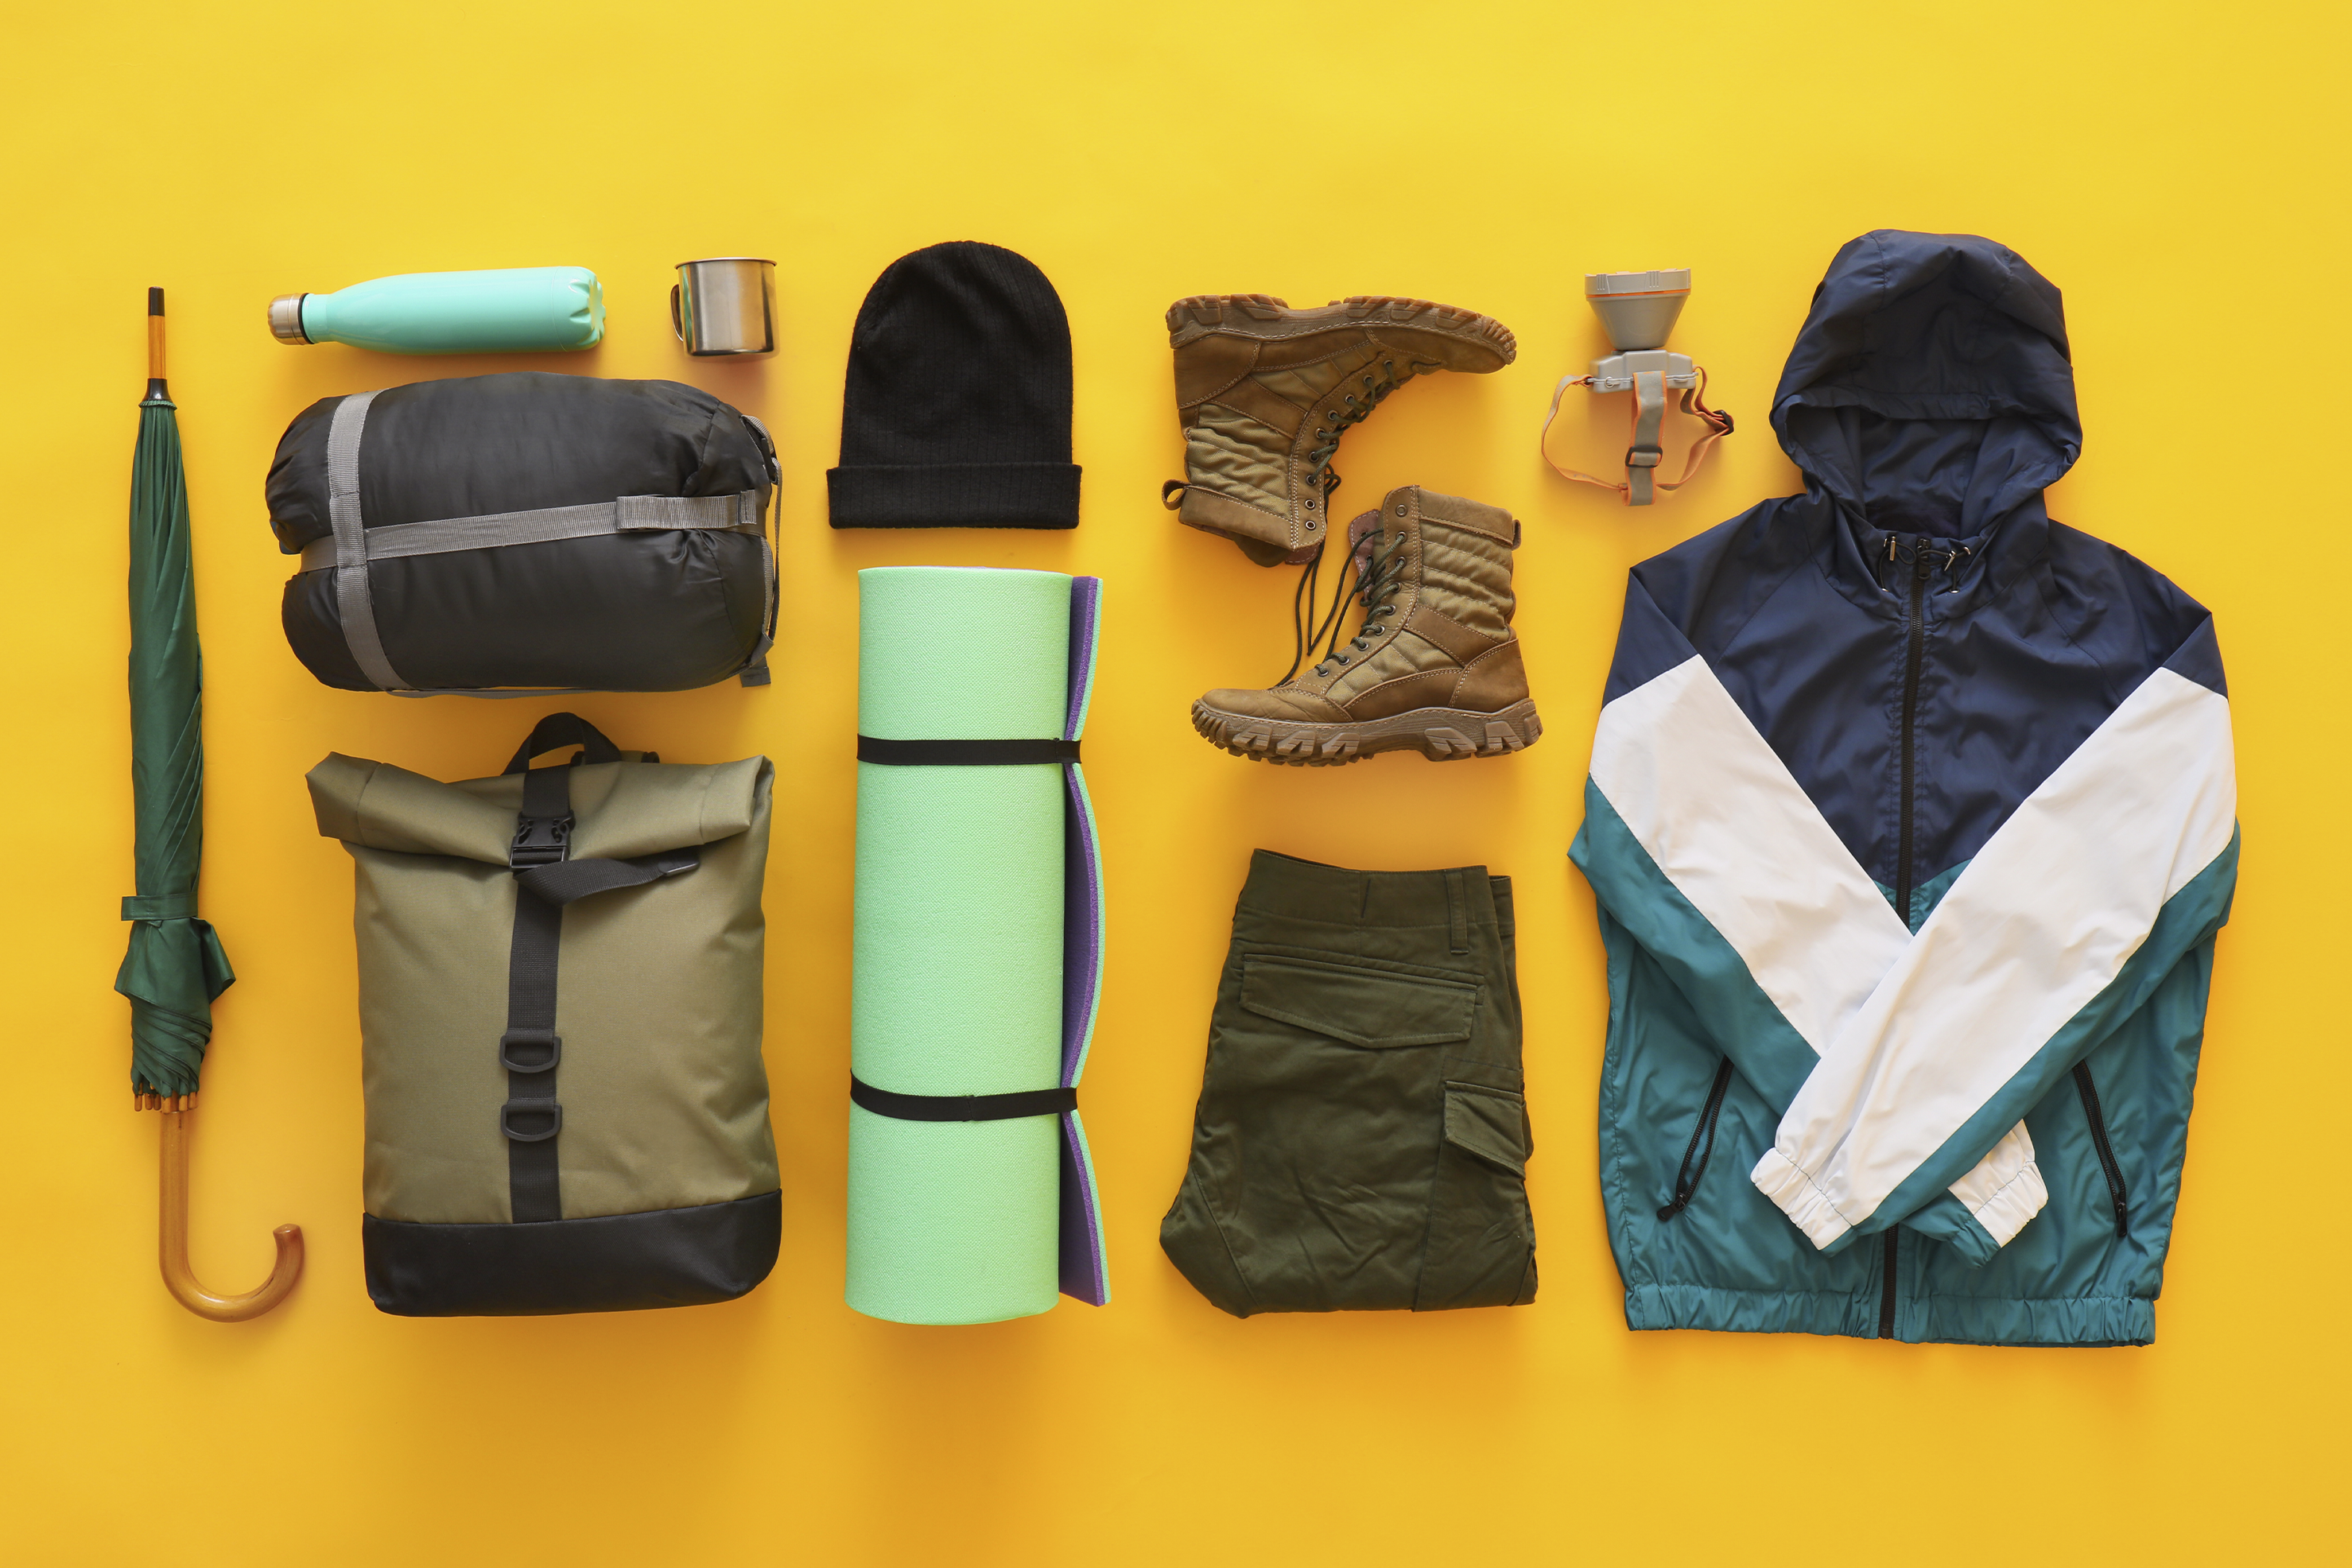 Melhores formas de organizar sua mala e levar mais com pouco espaço